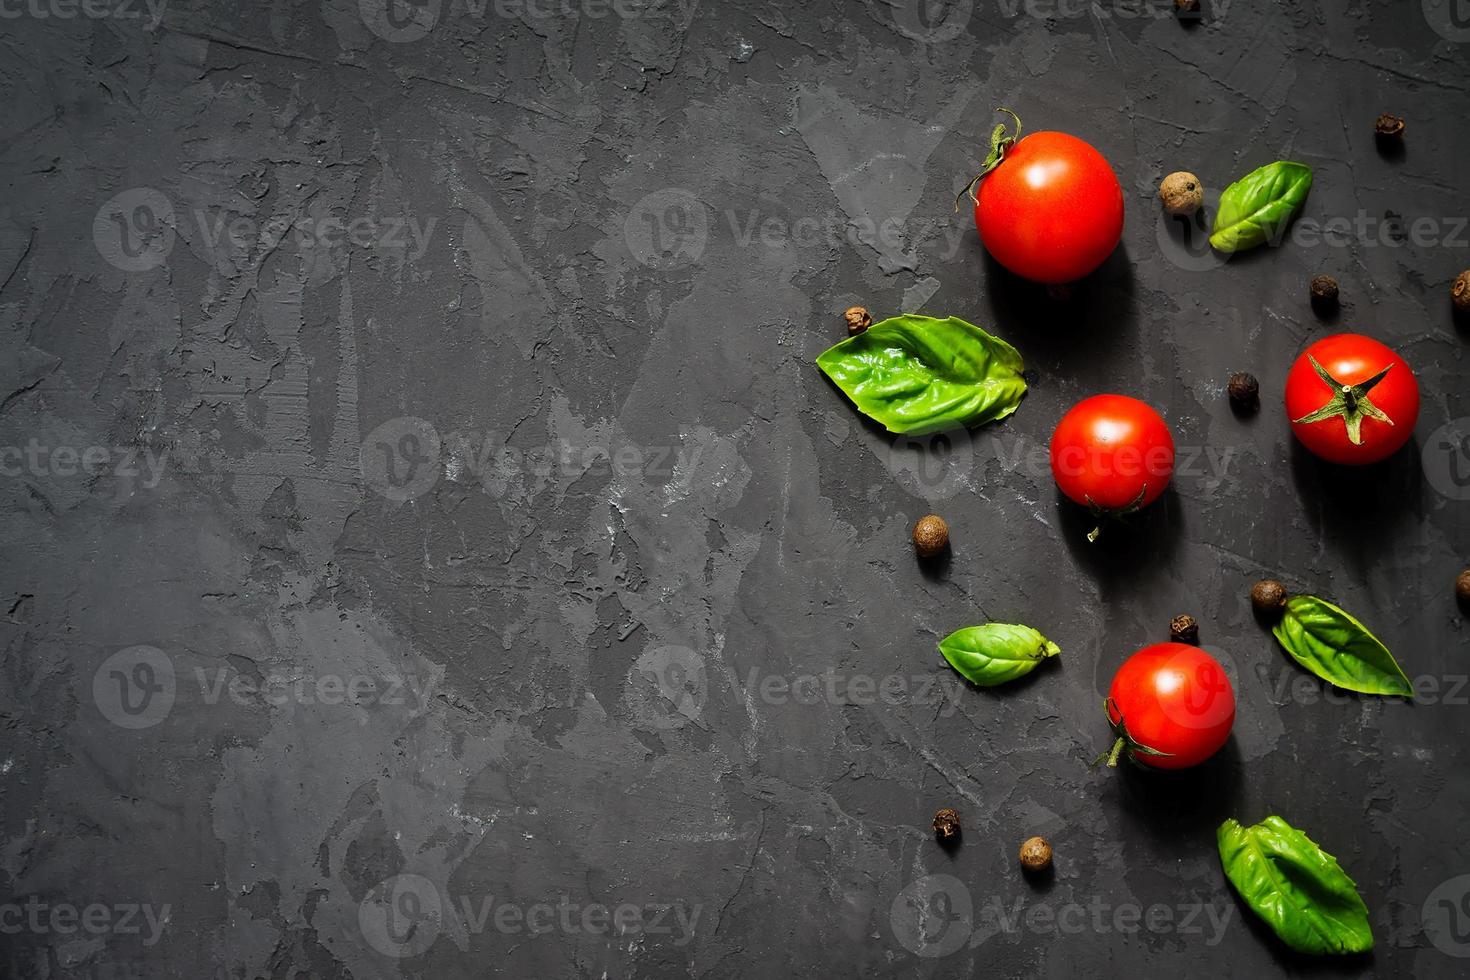 suculentos tomates cereja maduros com folhas de manjericão verde e pimenta preta sobre fundo preto. conceito de comida saudável. vista superior, copie o espaço foto